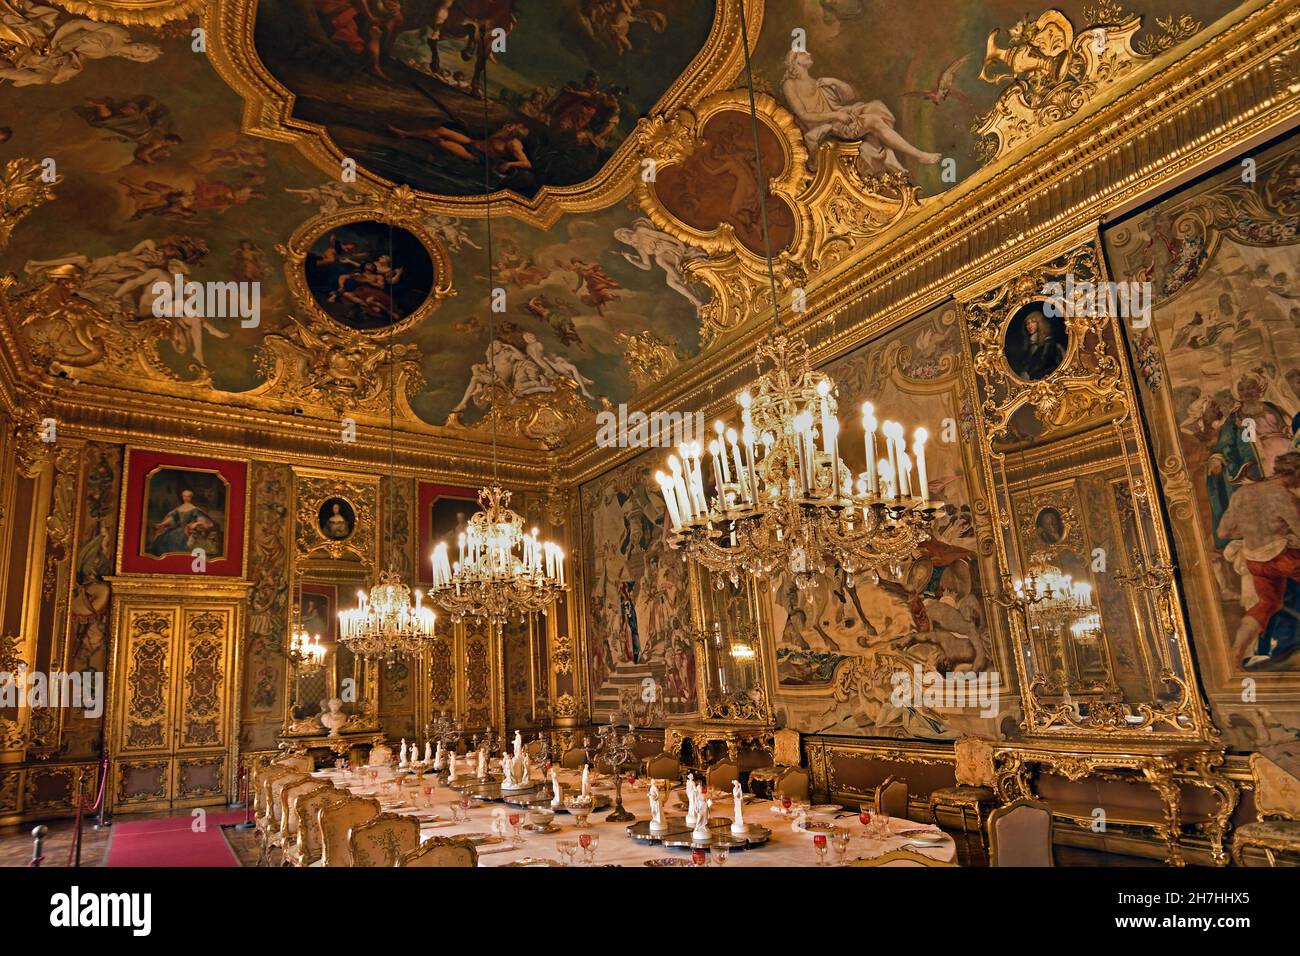 La salle à manger Torino Palazzo Reale - Palais Royal de Turin, Italien, Italie Gobelins Banque D'Images